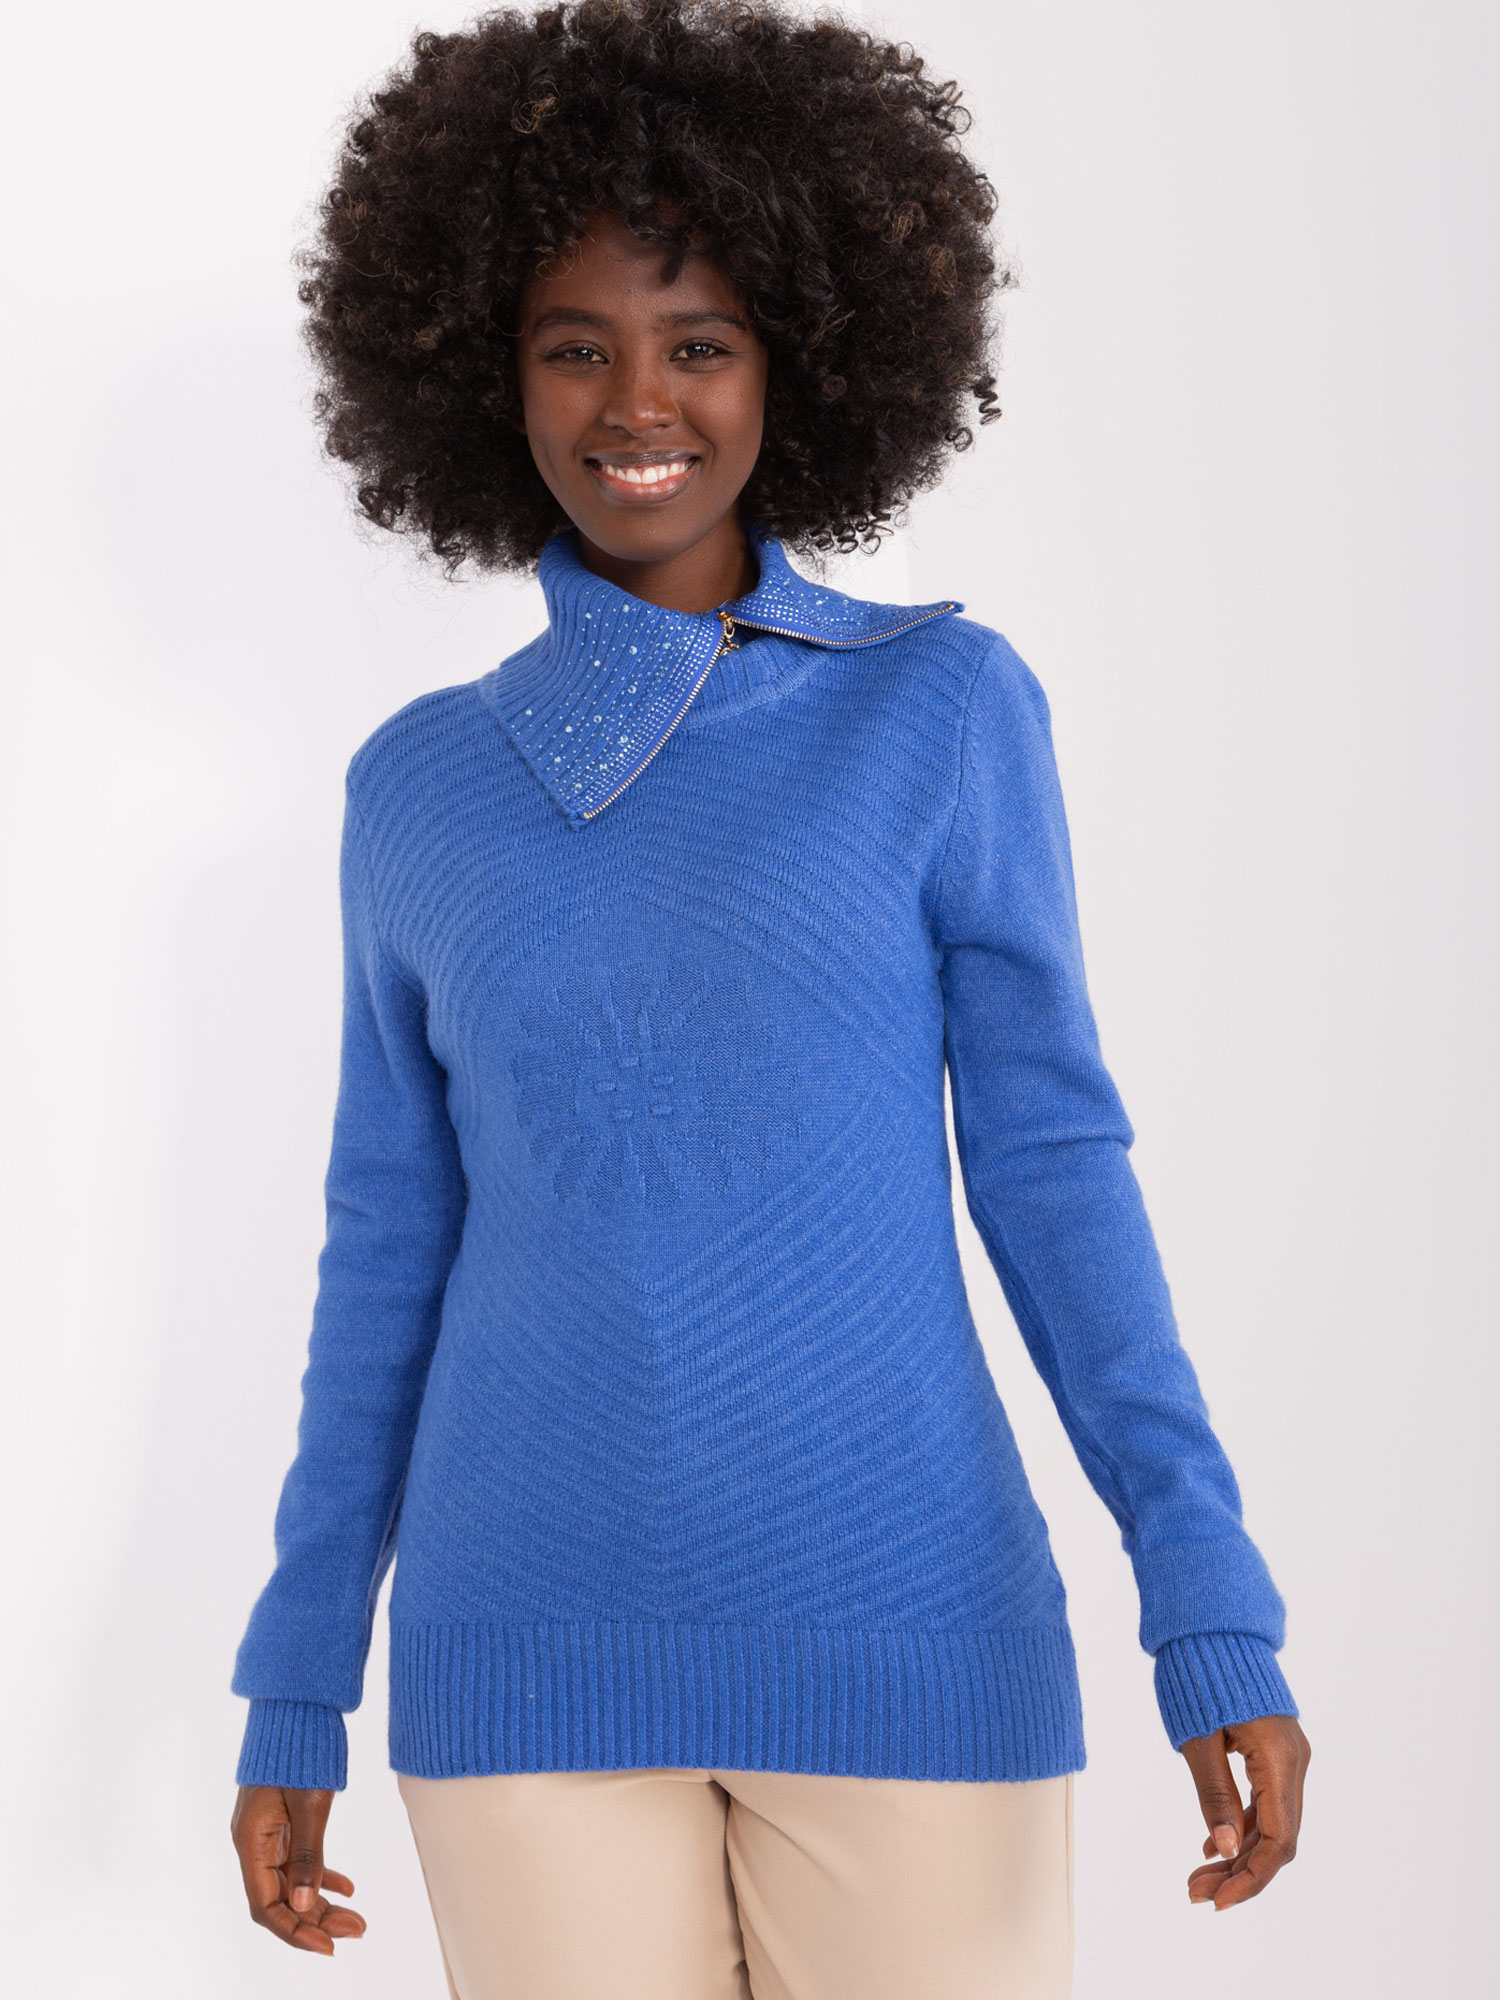 Modrý svetr s rolákem na zip -PM-SW-R3634.99-blue Velikost: S/M